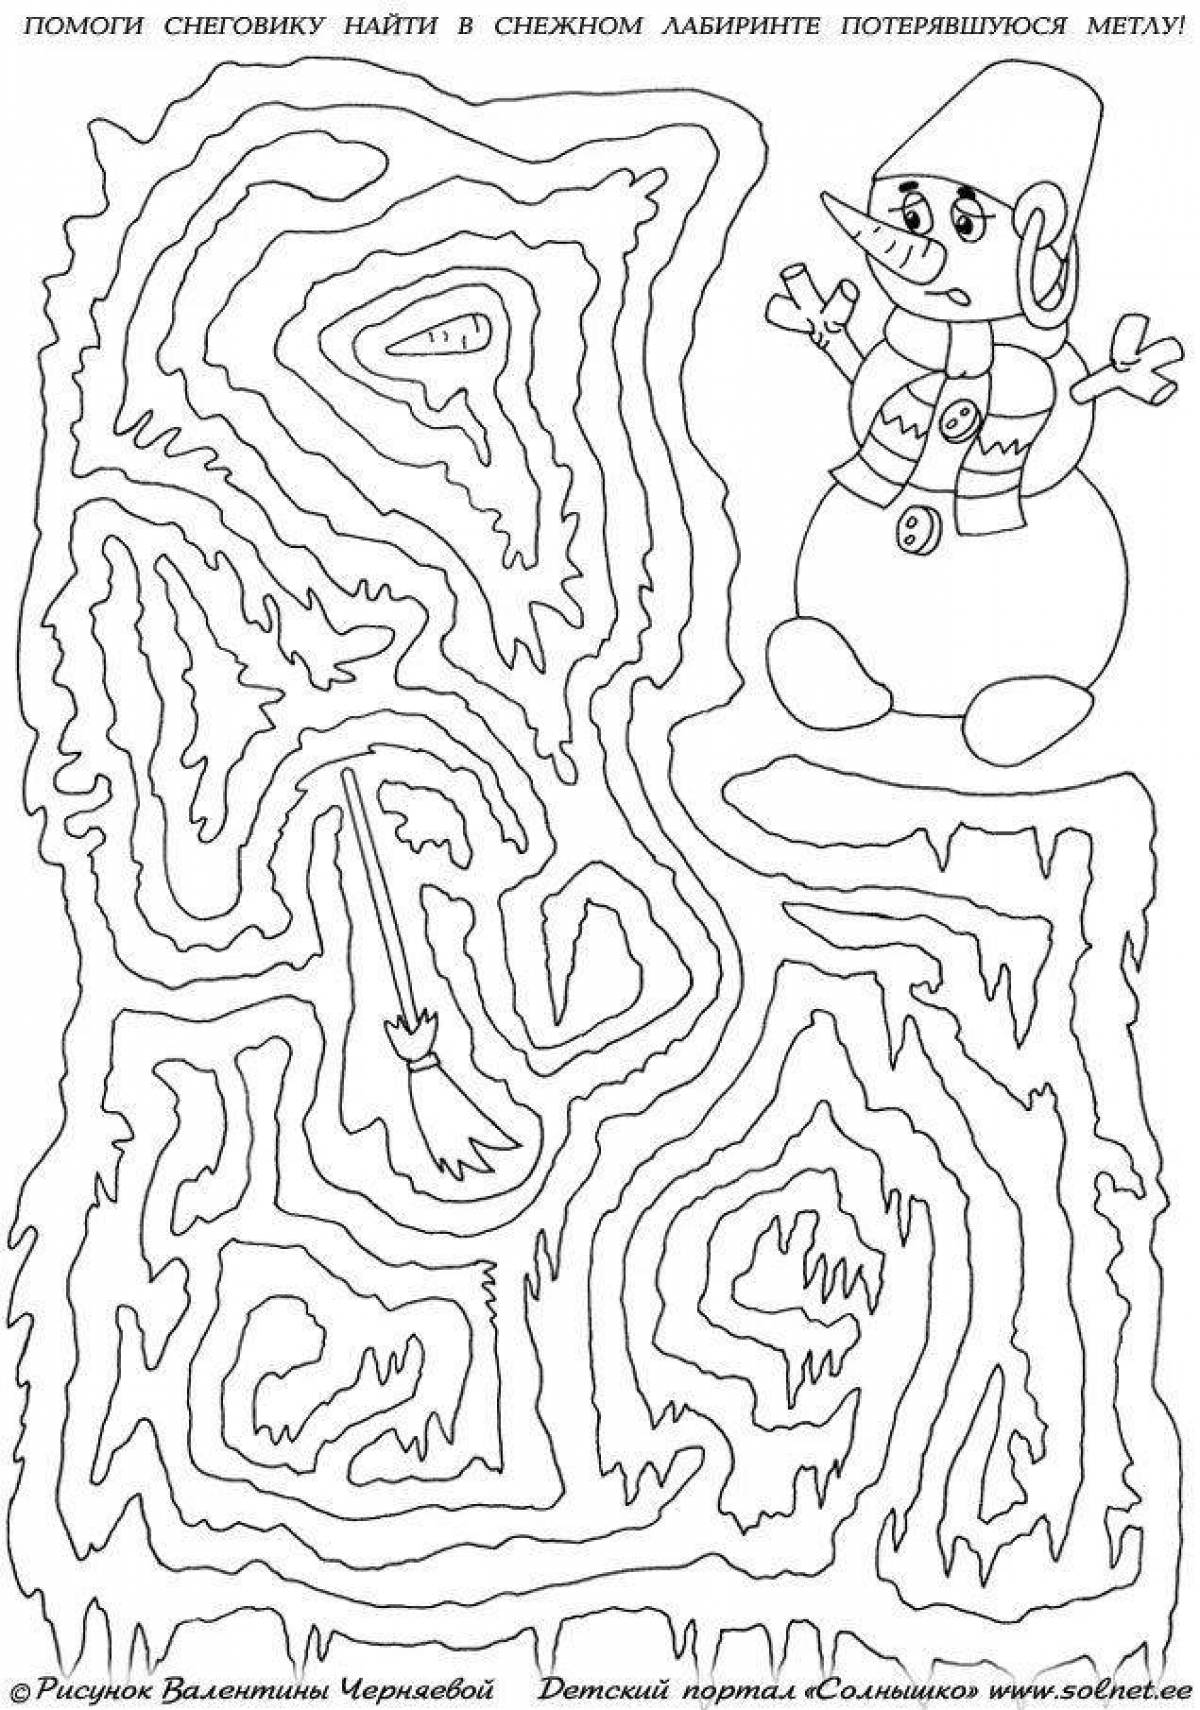 Christmas colorful maze